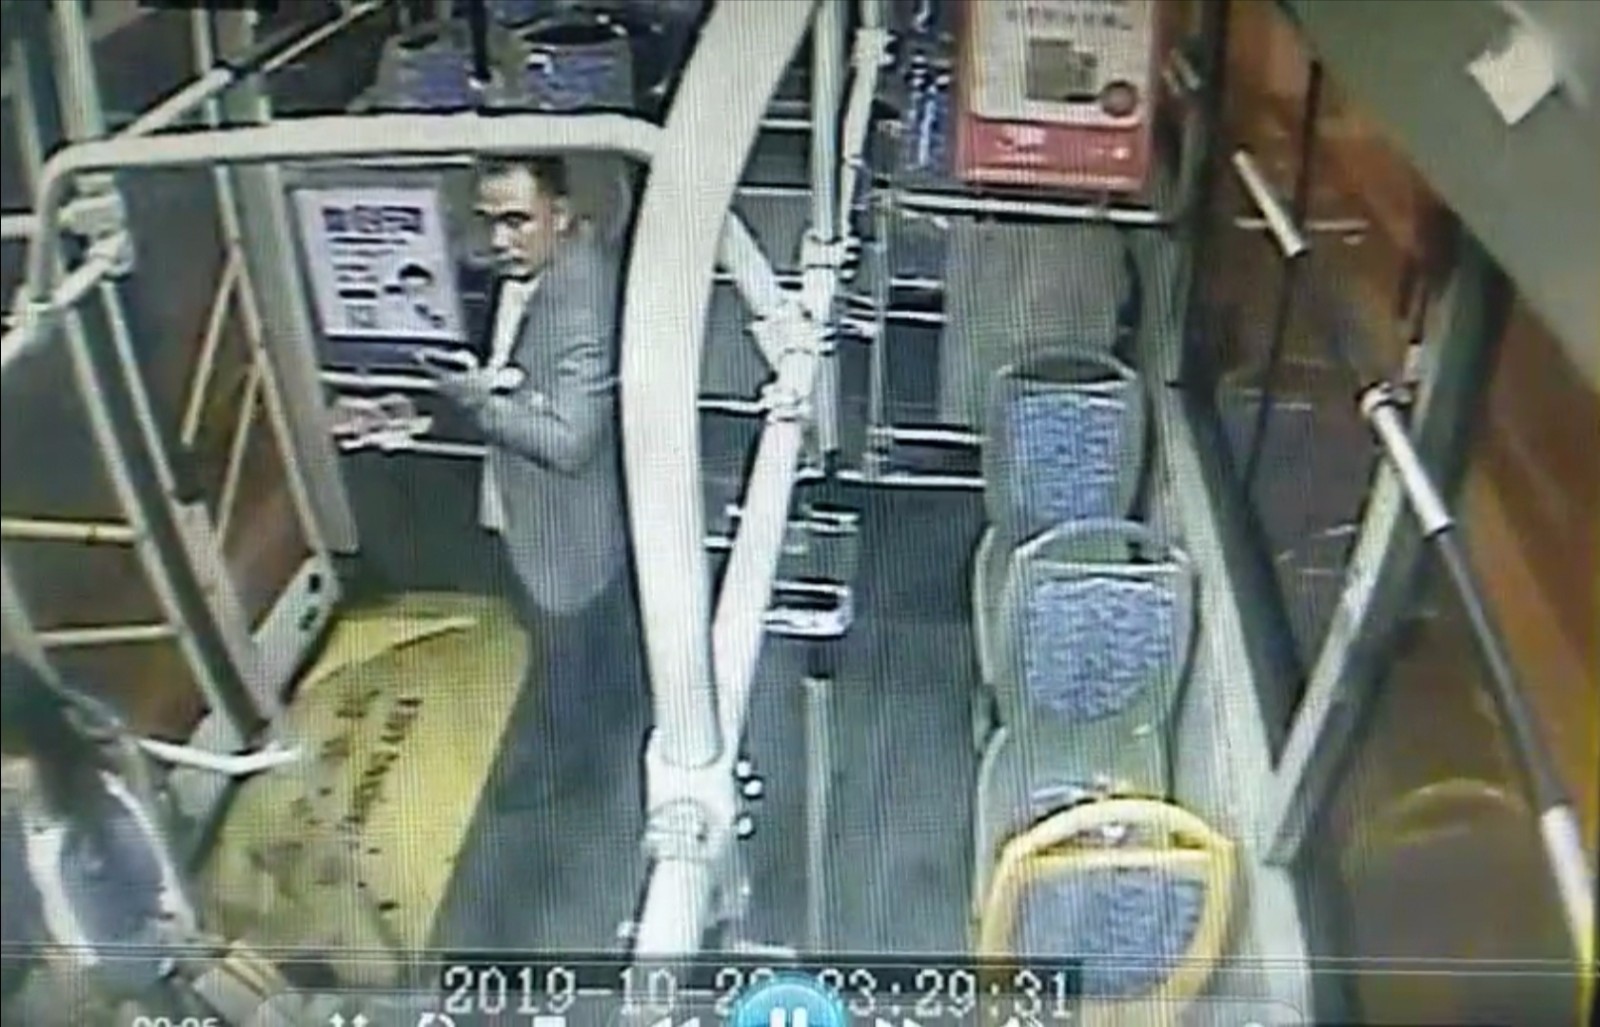 失主就是这名男乘客。 长沙晚报全媒体记者 小刘军 翻拍监控